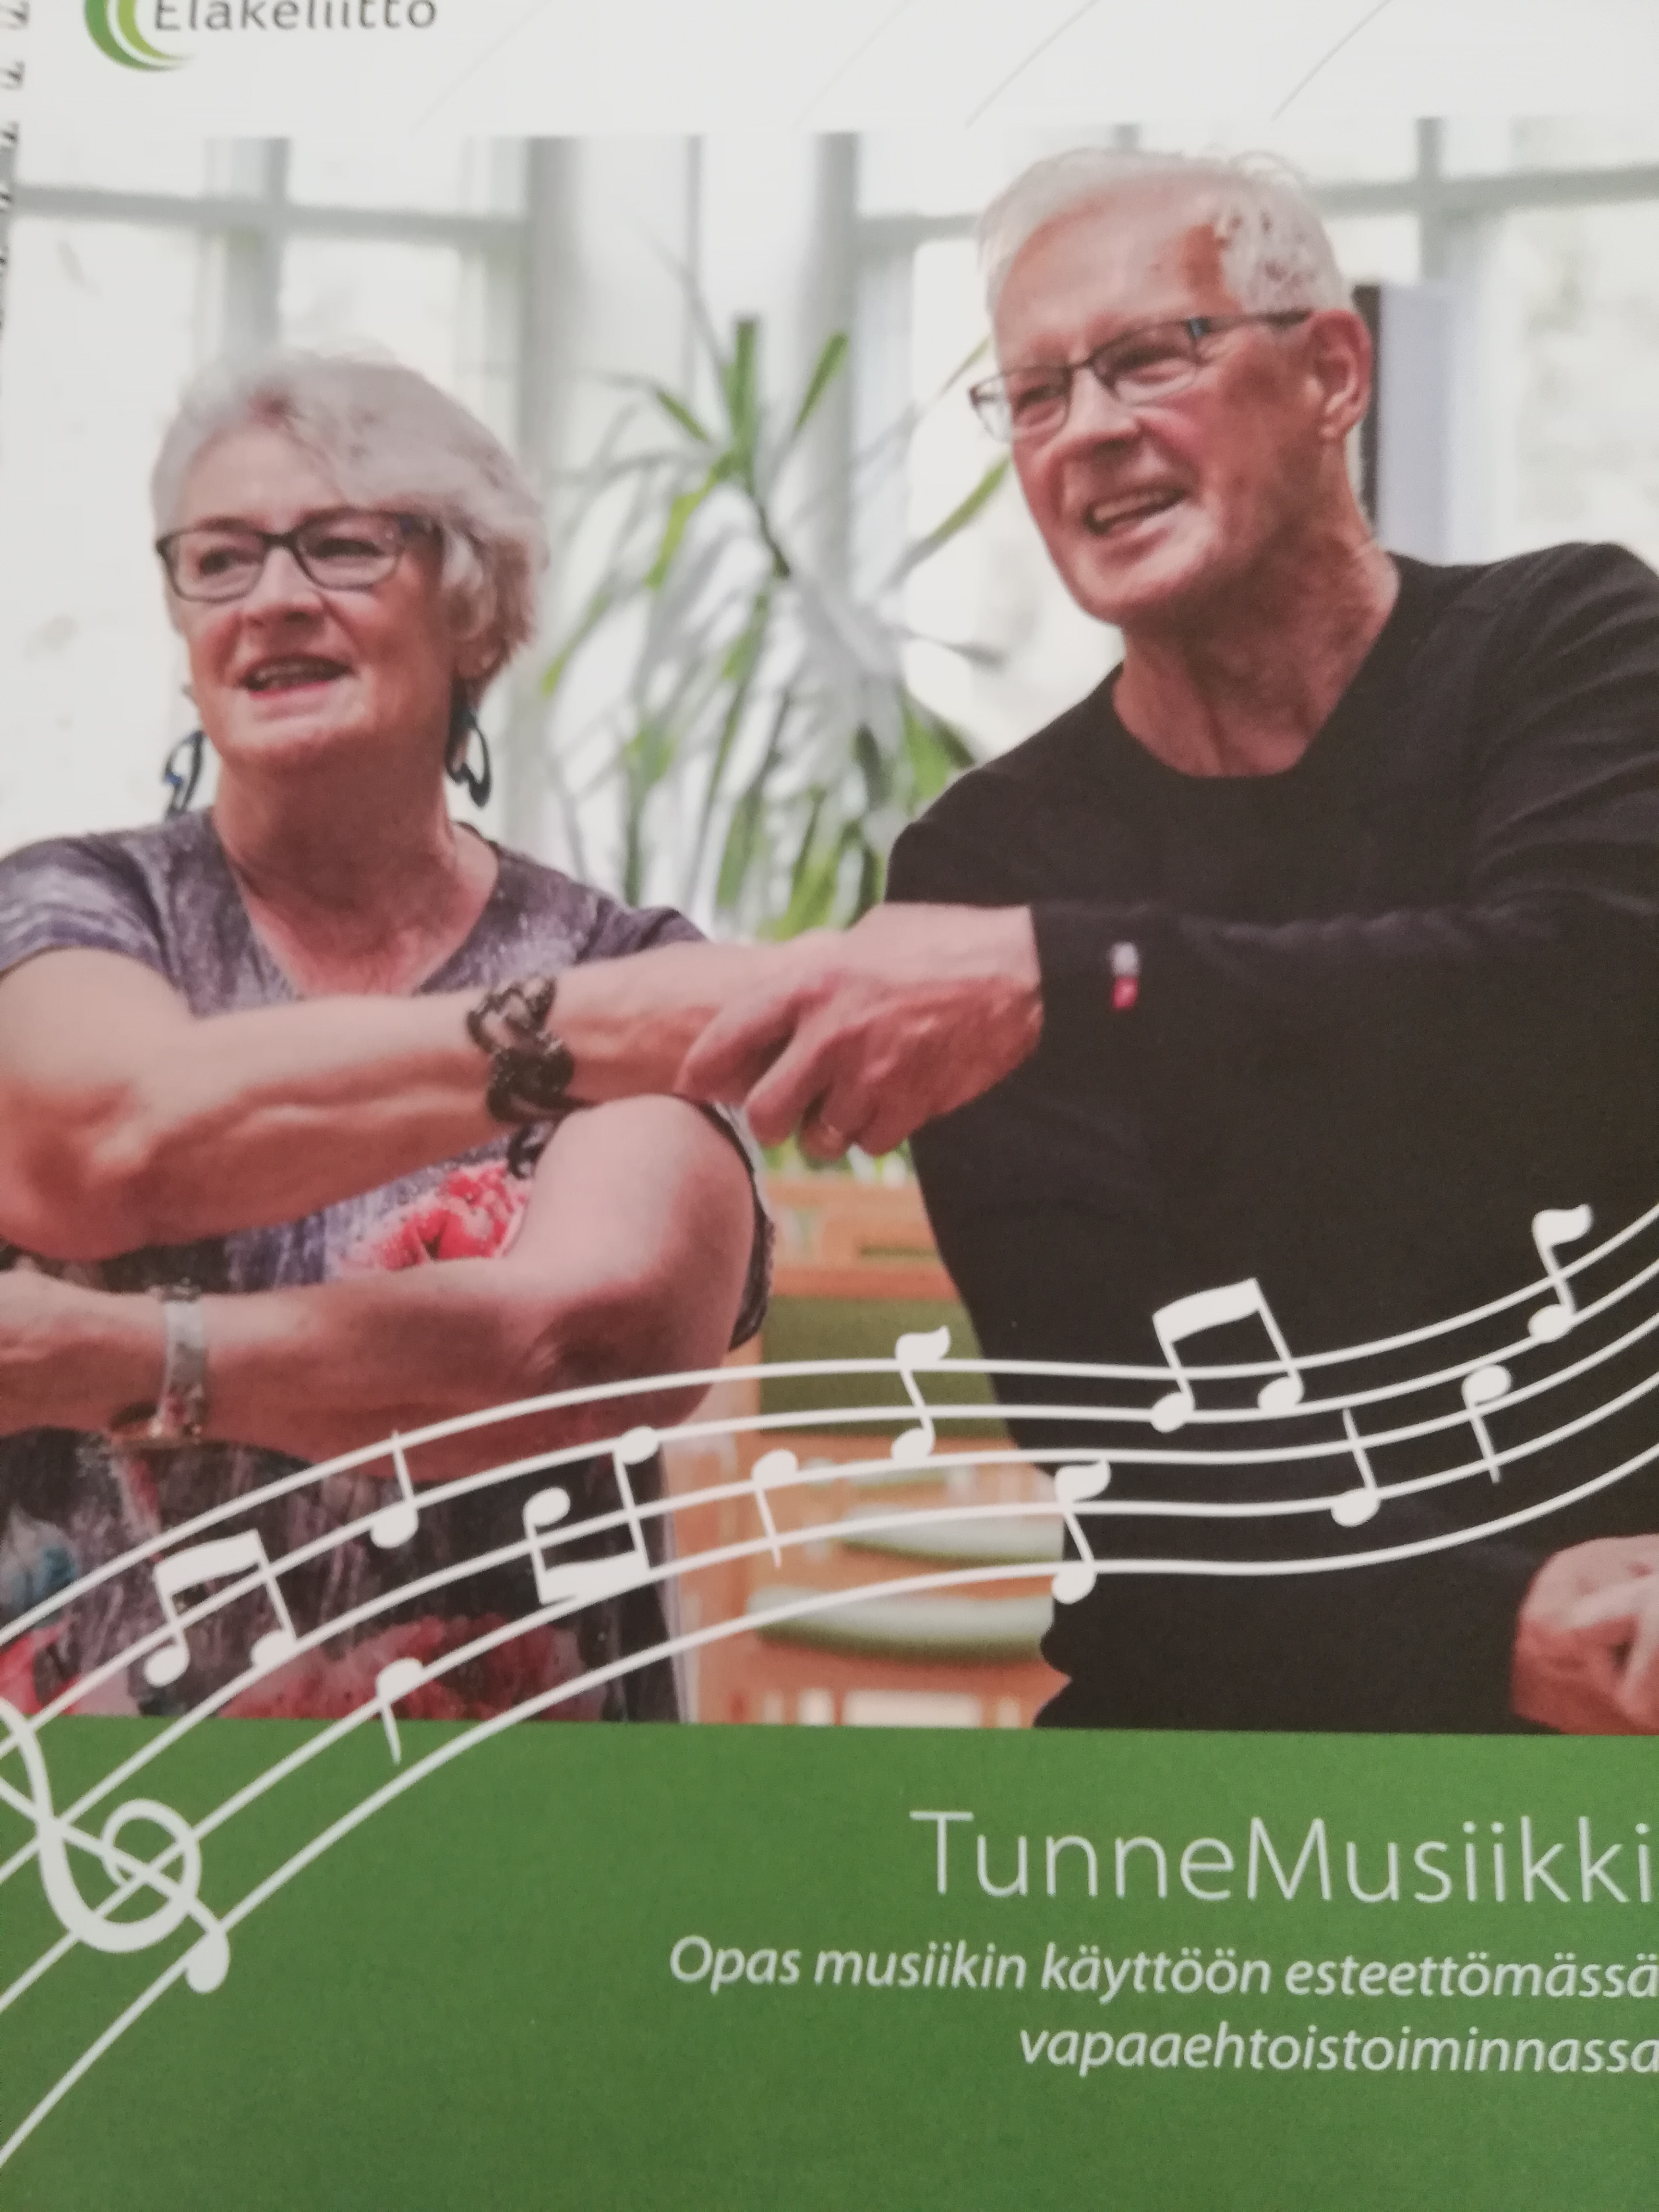 Leila ja Seppo TunneMusiikki kursseilla Lehmirannassa